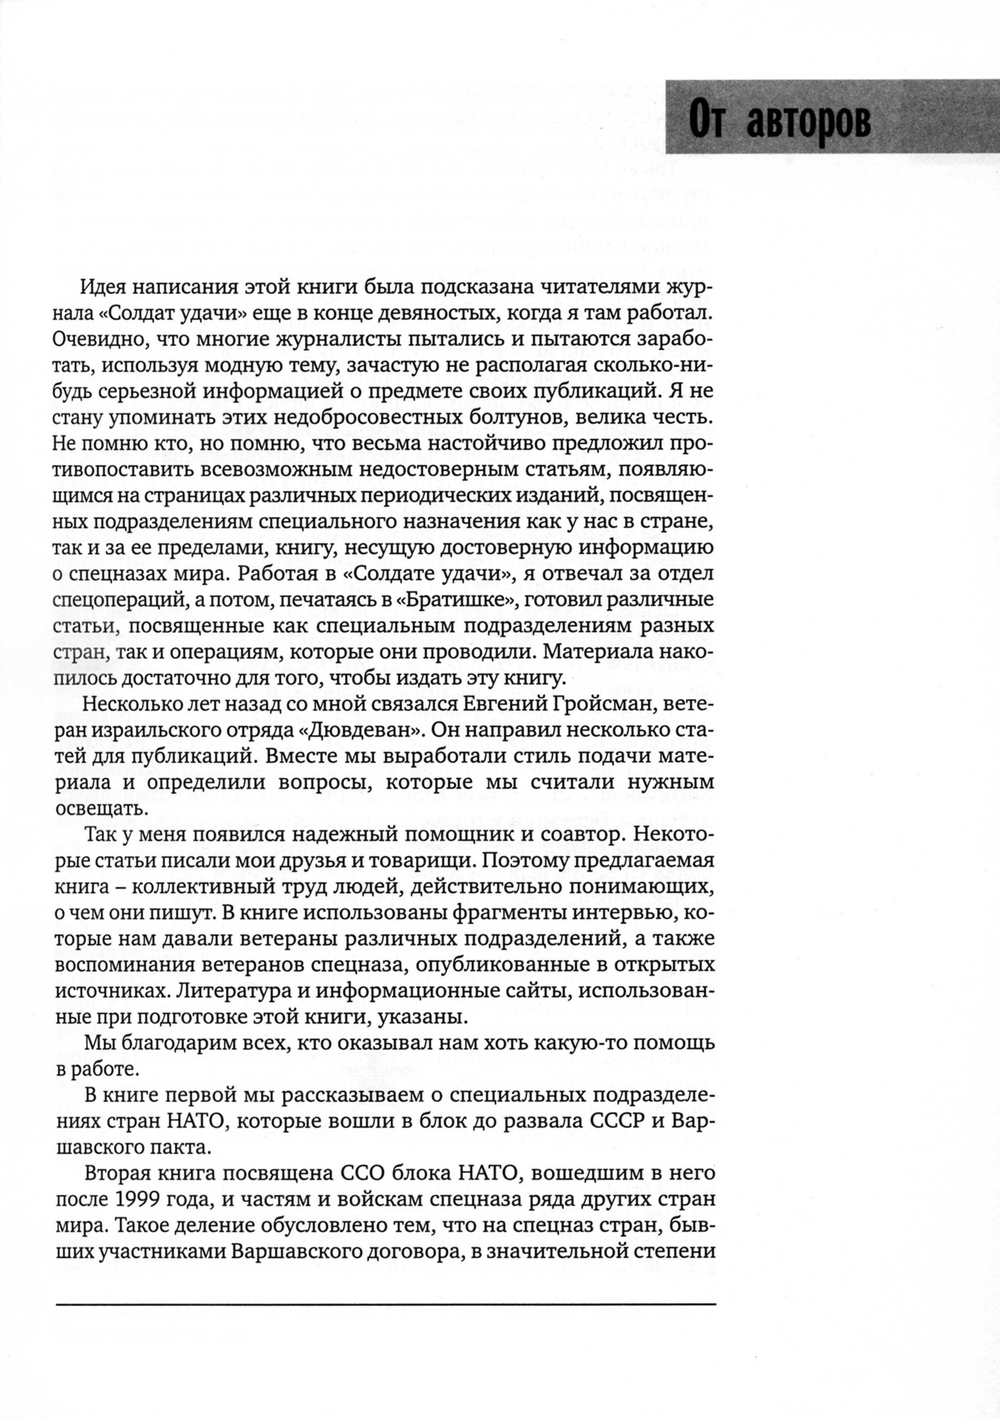 Козлов С.В., Гройсман Е. Силы специальных операций НАТО: расширение до 1999 г.